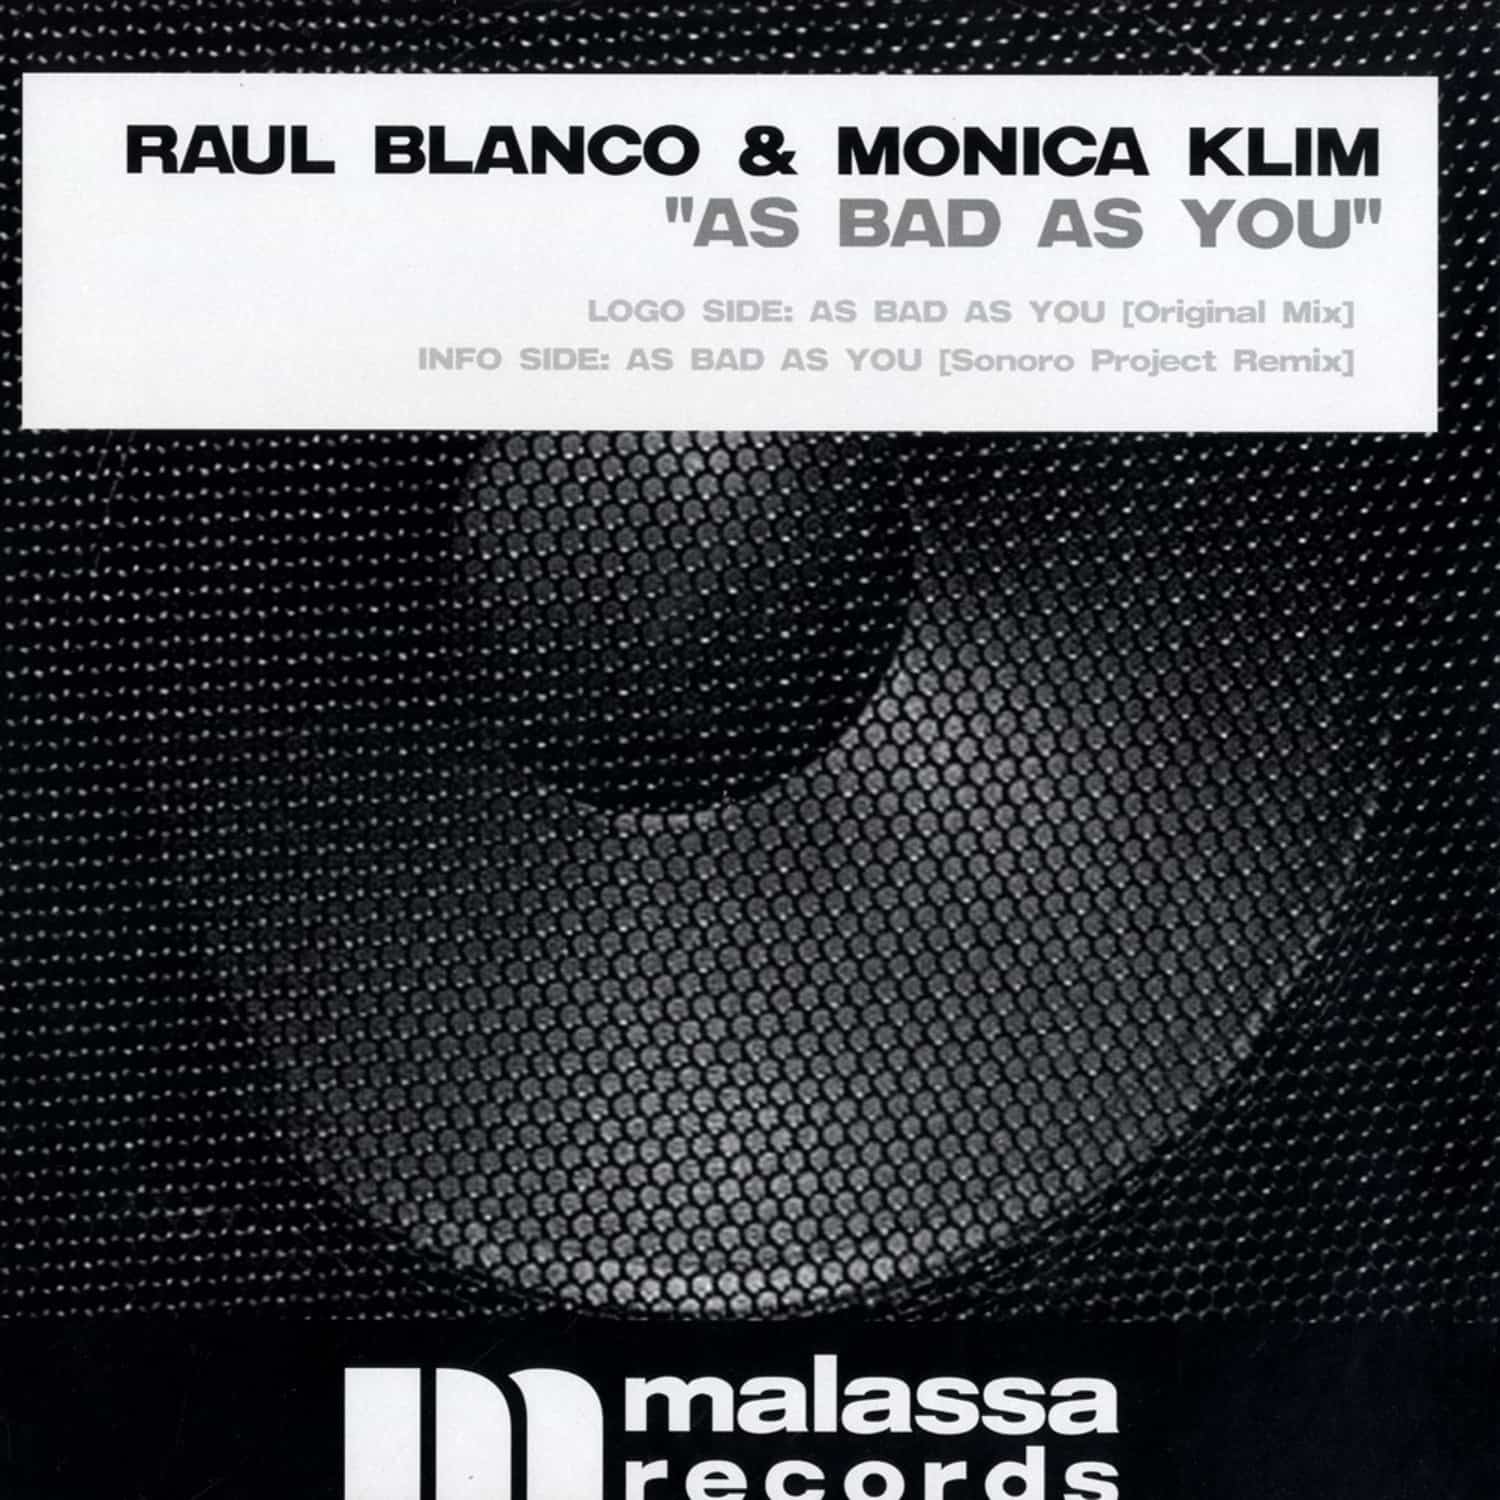 Raul Blanco & Monica Klim - AS BAD AS YOU